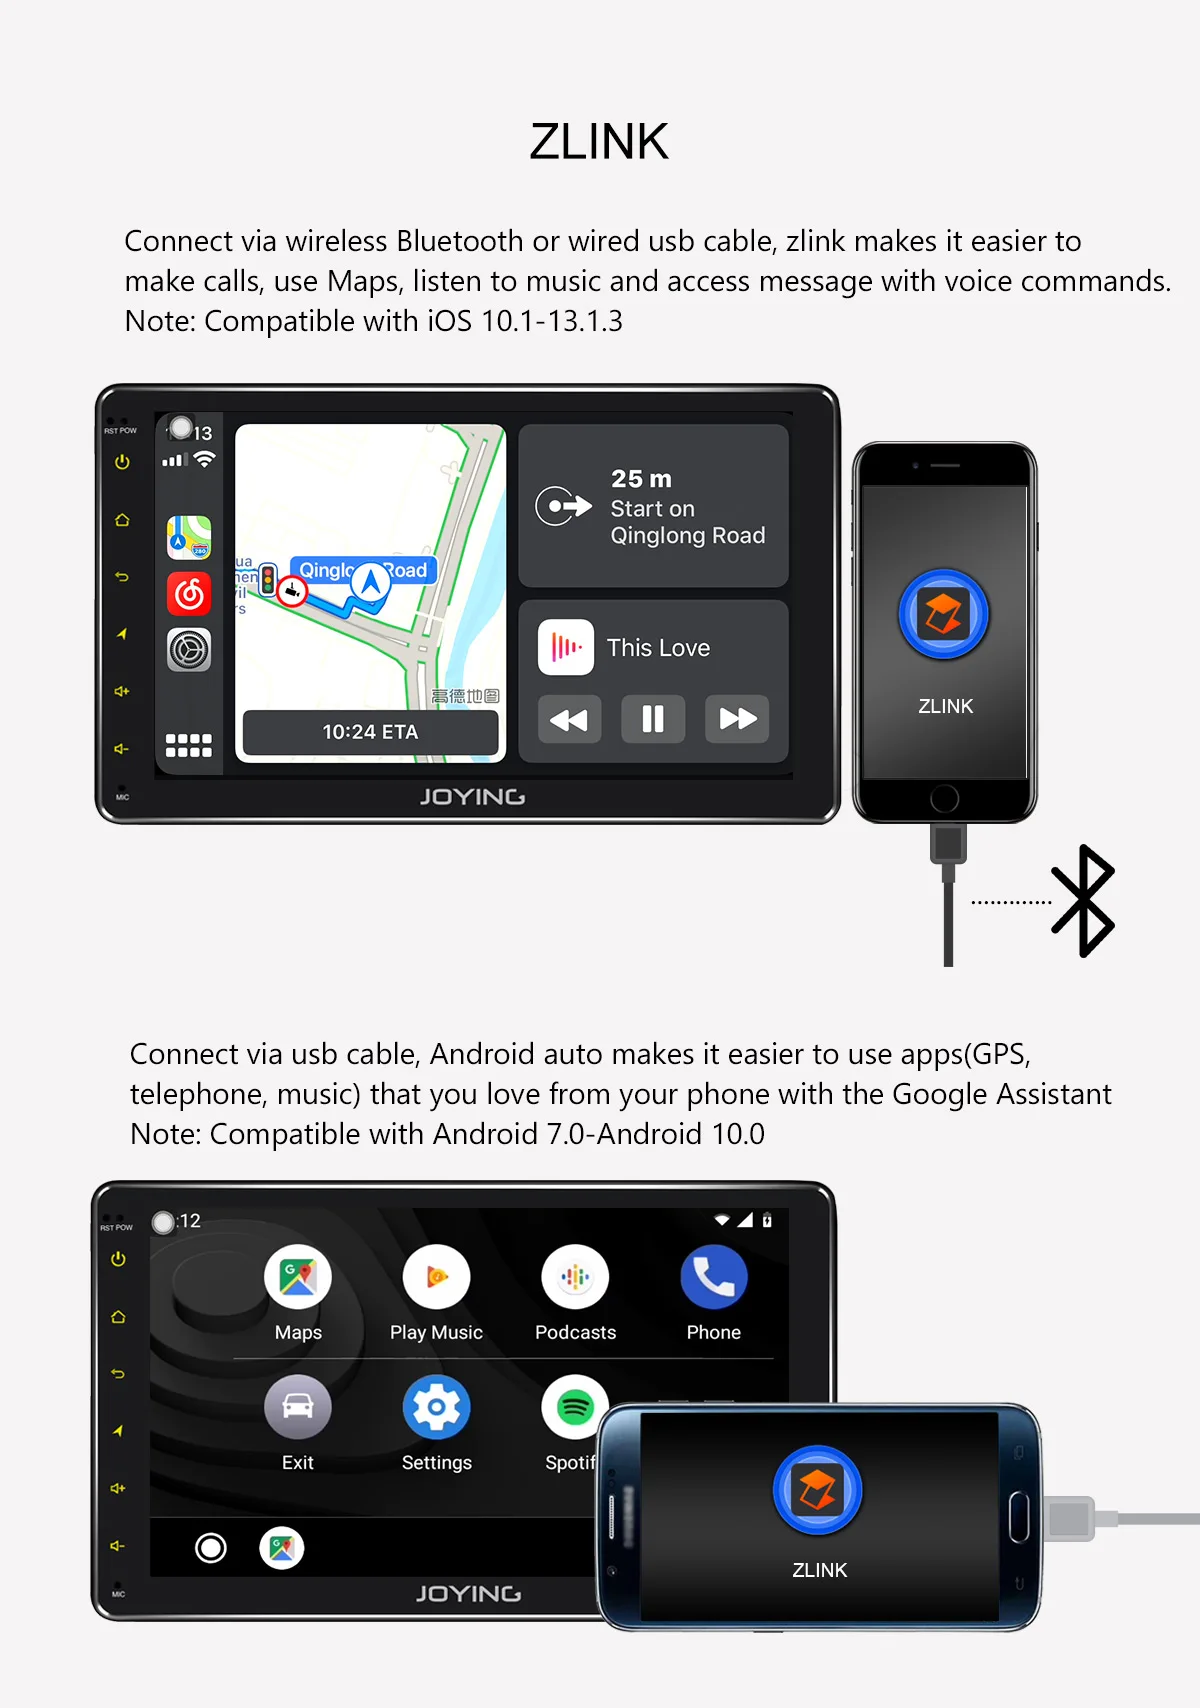 " двойной 2din головное устройство gps-навигация, dvd-плеер для Toyota Универсальный Android 8,1 автомобильный Радио стерео Встроенный 4G модем DSP Zlink